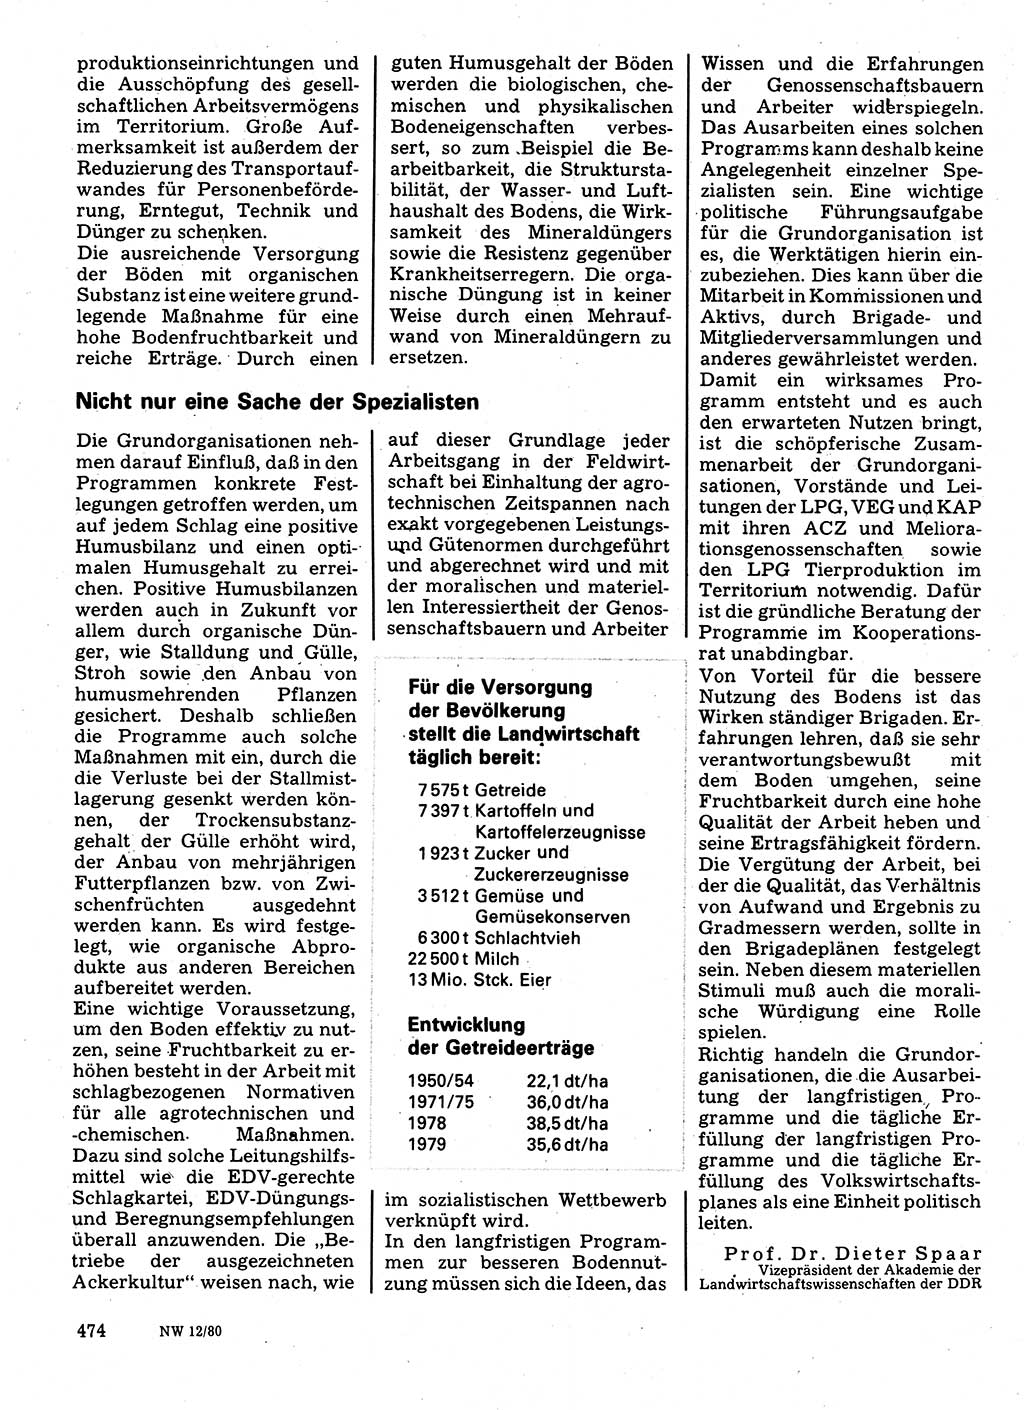 Neuer Weg (NW), Organ des Zentralkomitees (ZK) der SED (Sozialistische Einheitspartei Deutschlands) für Fragen des Parteilebens, 35. Jahrgang [Deutsche Demokratische Republik (DDR)] 1980, Seite 474 (NW ZK SED DDR 1980, S. 474)